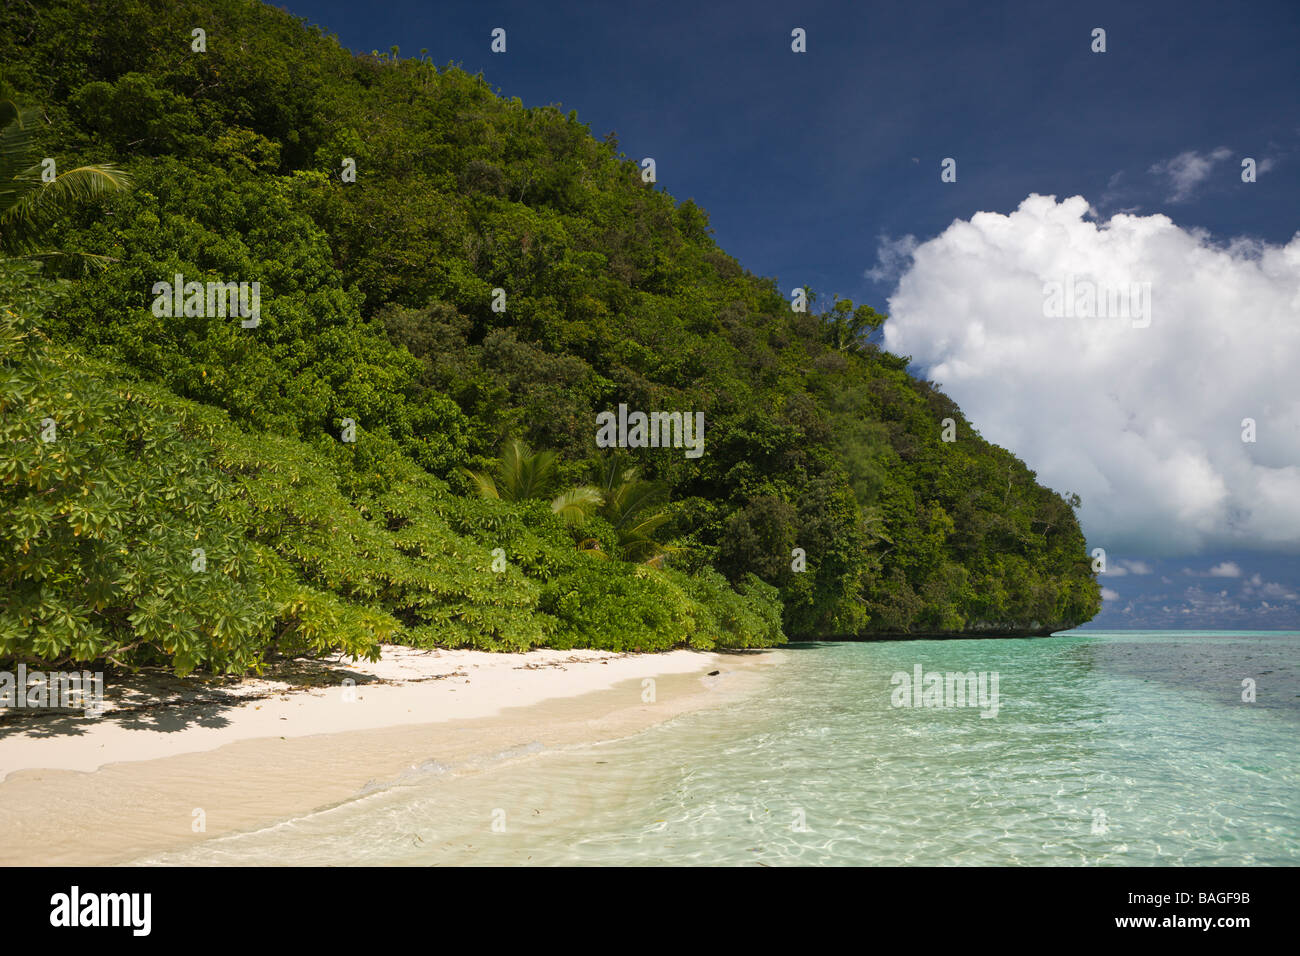 Beach of Palau Micronesia Palau Stock Photo